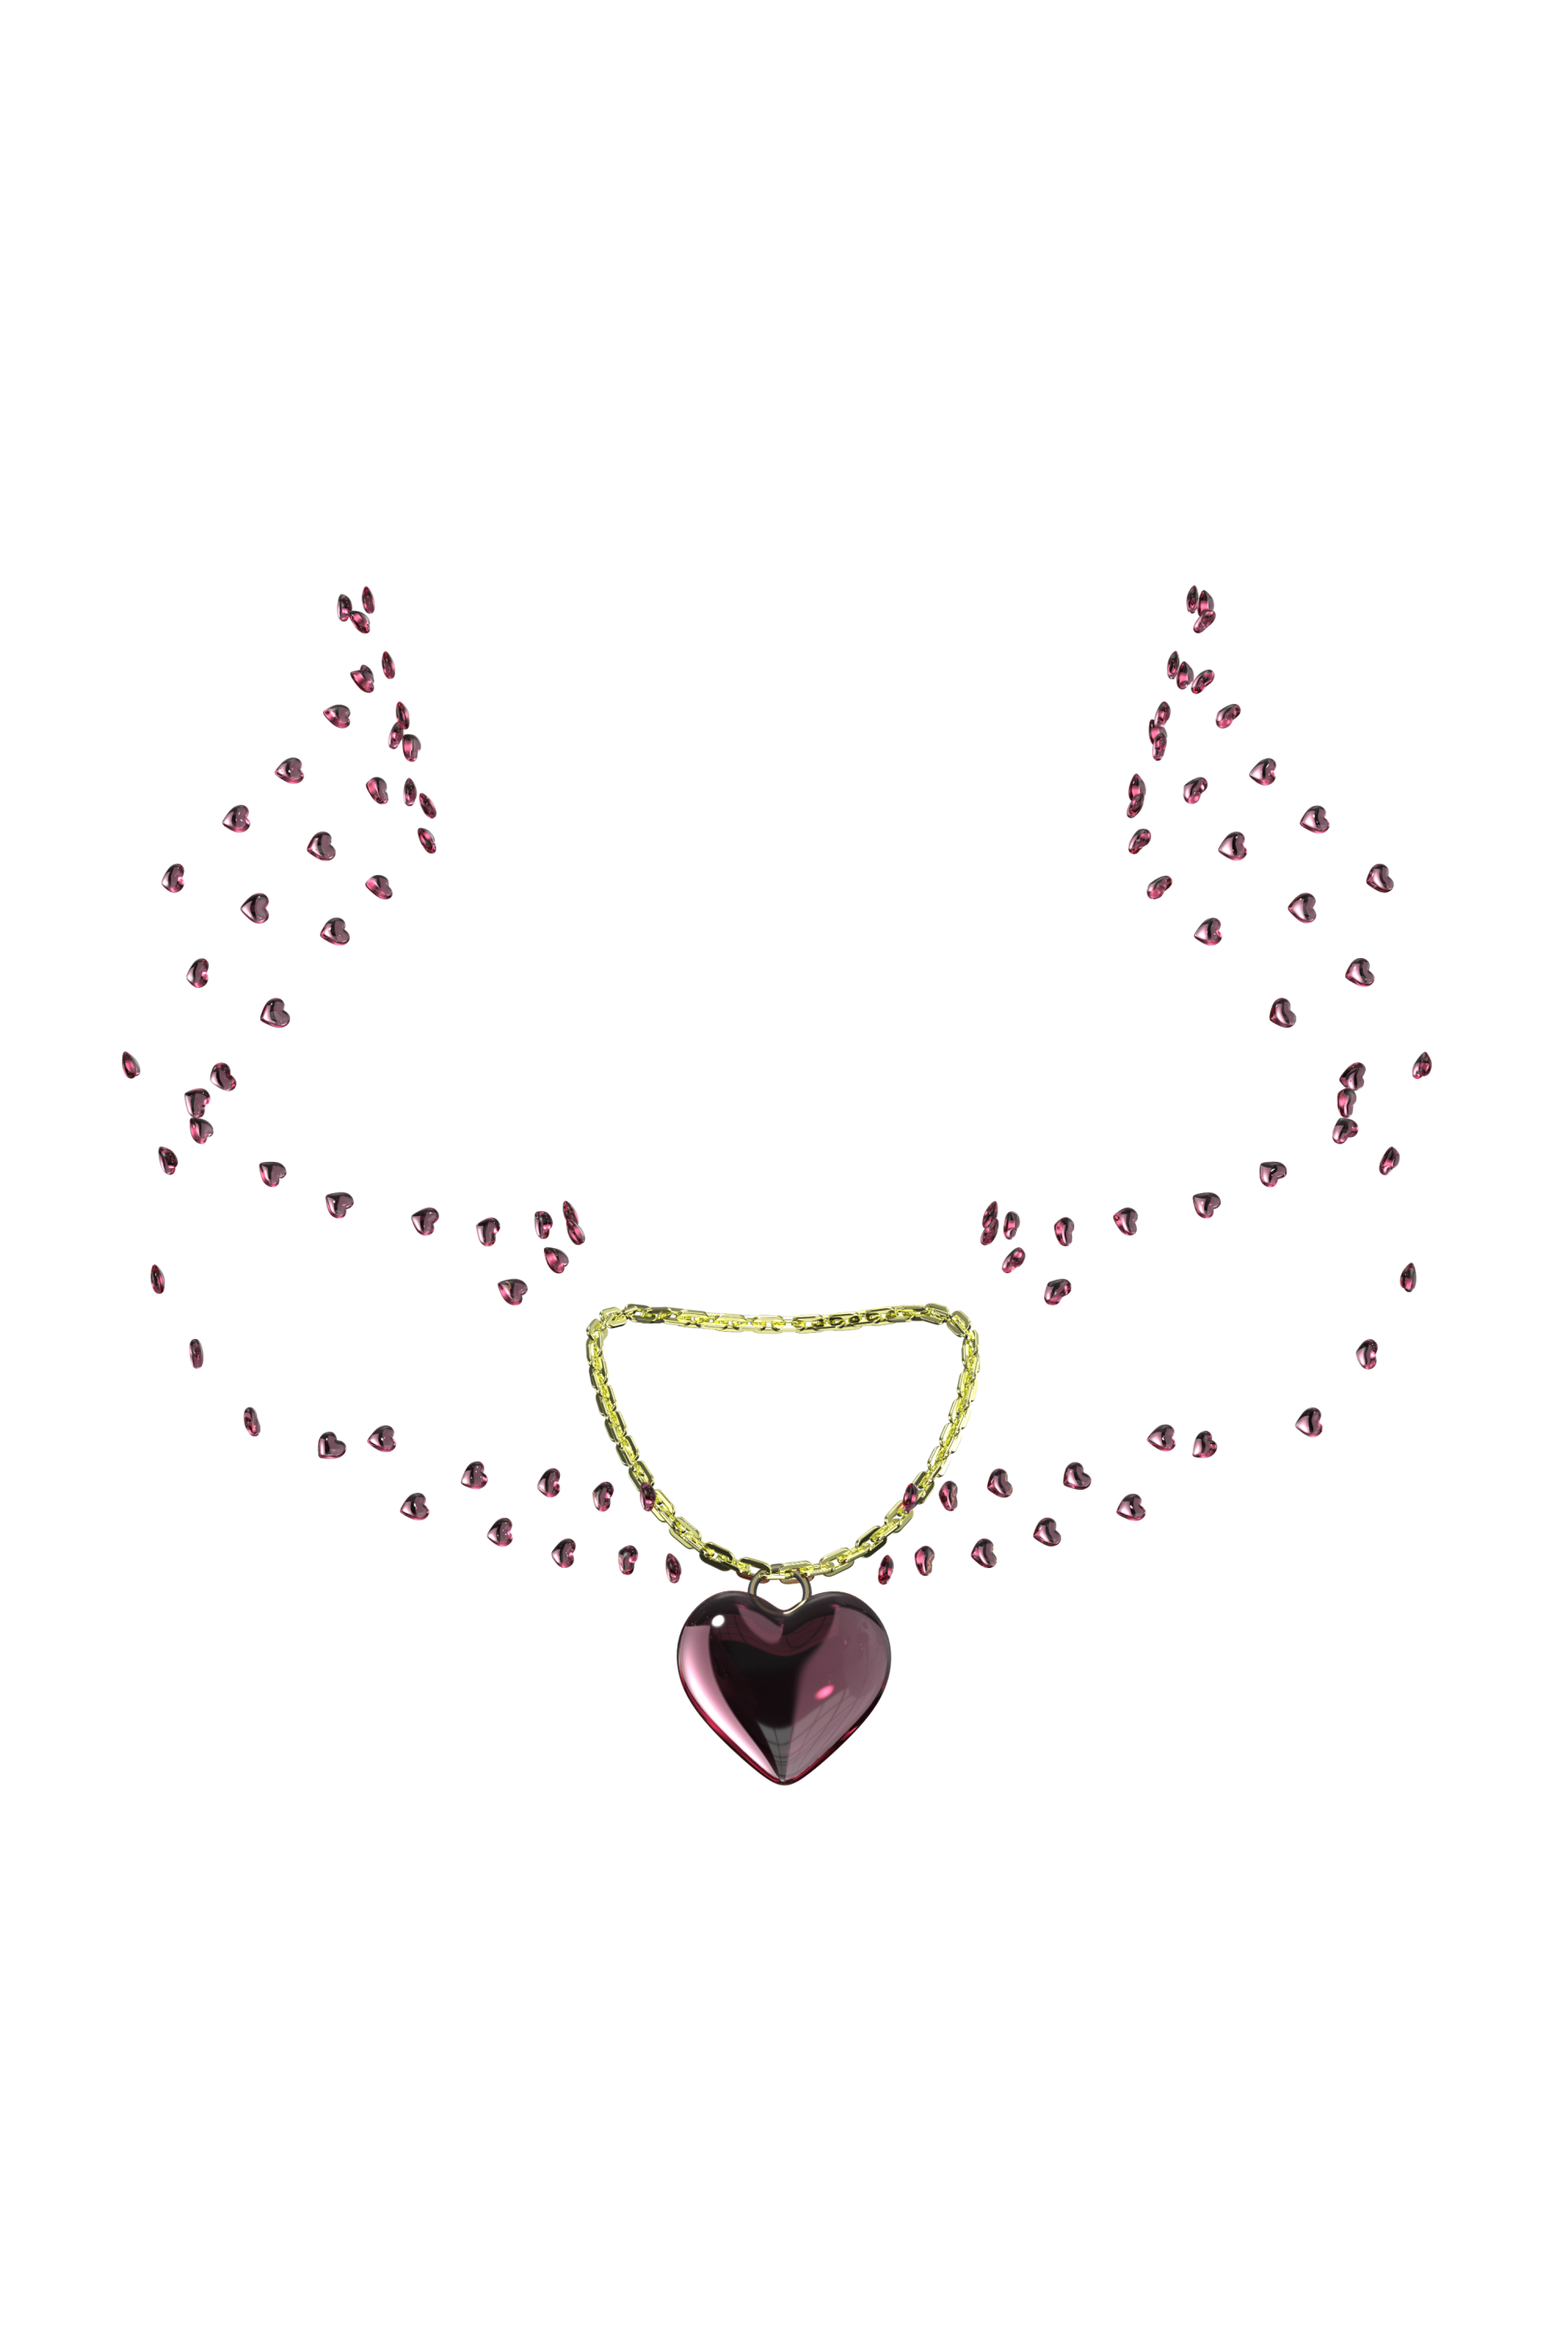 Printemps | Heart necklace